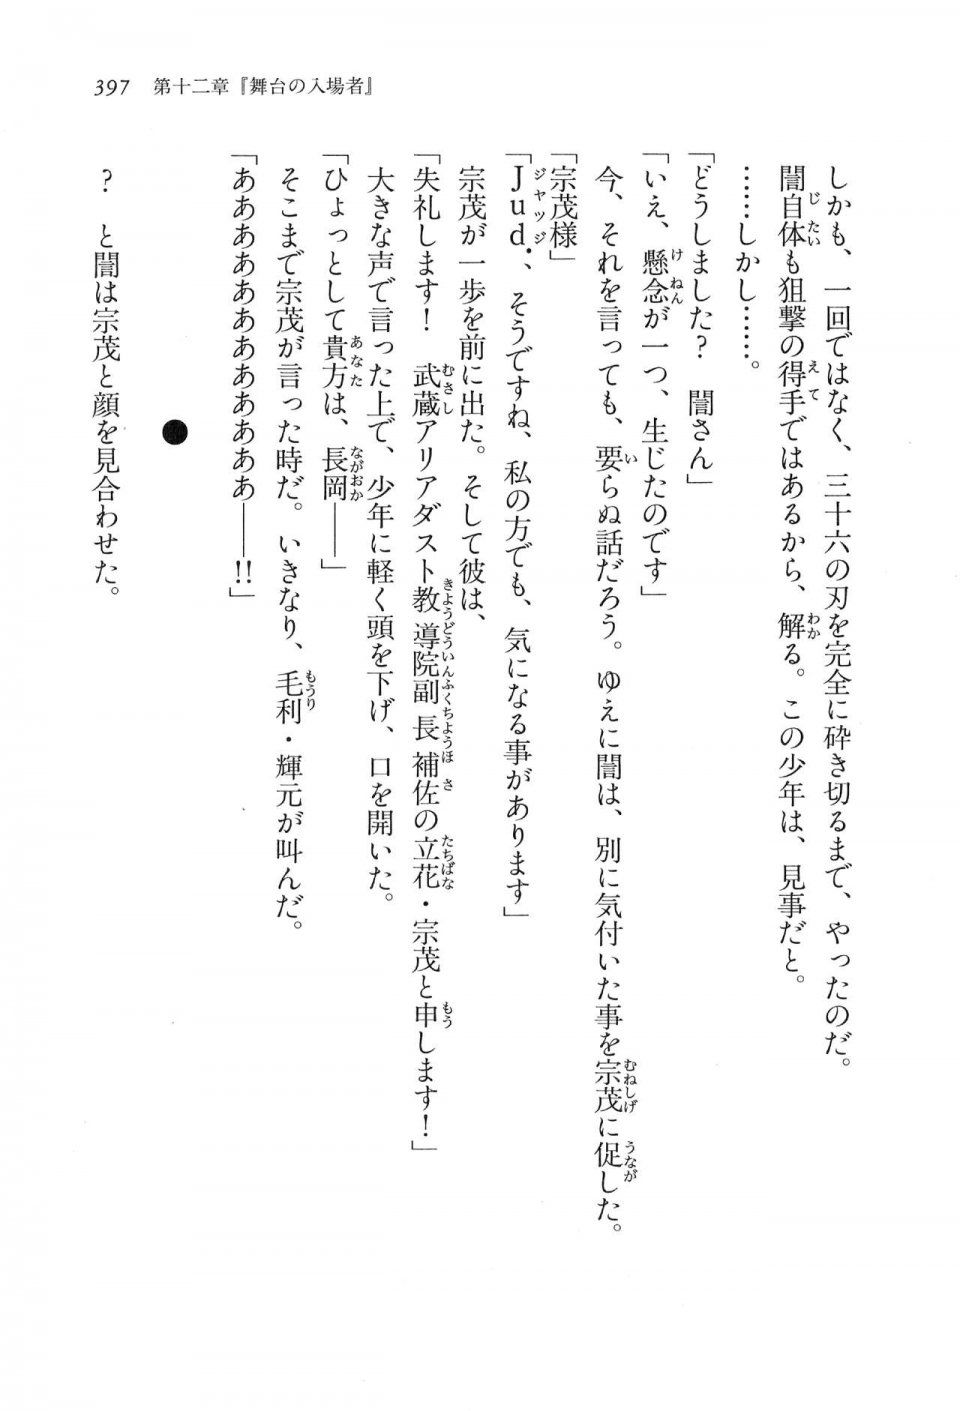 Kyoukai Senjou no Horizon LN Vol 16(7A) - Photo #397